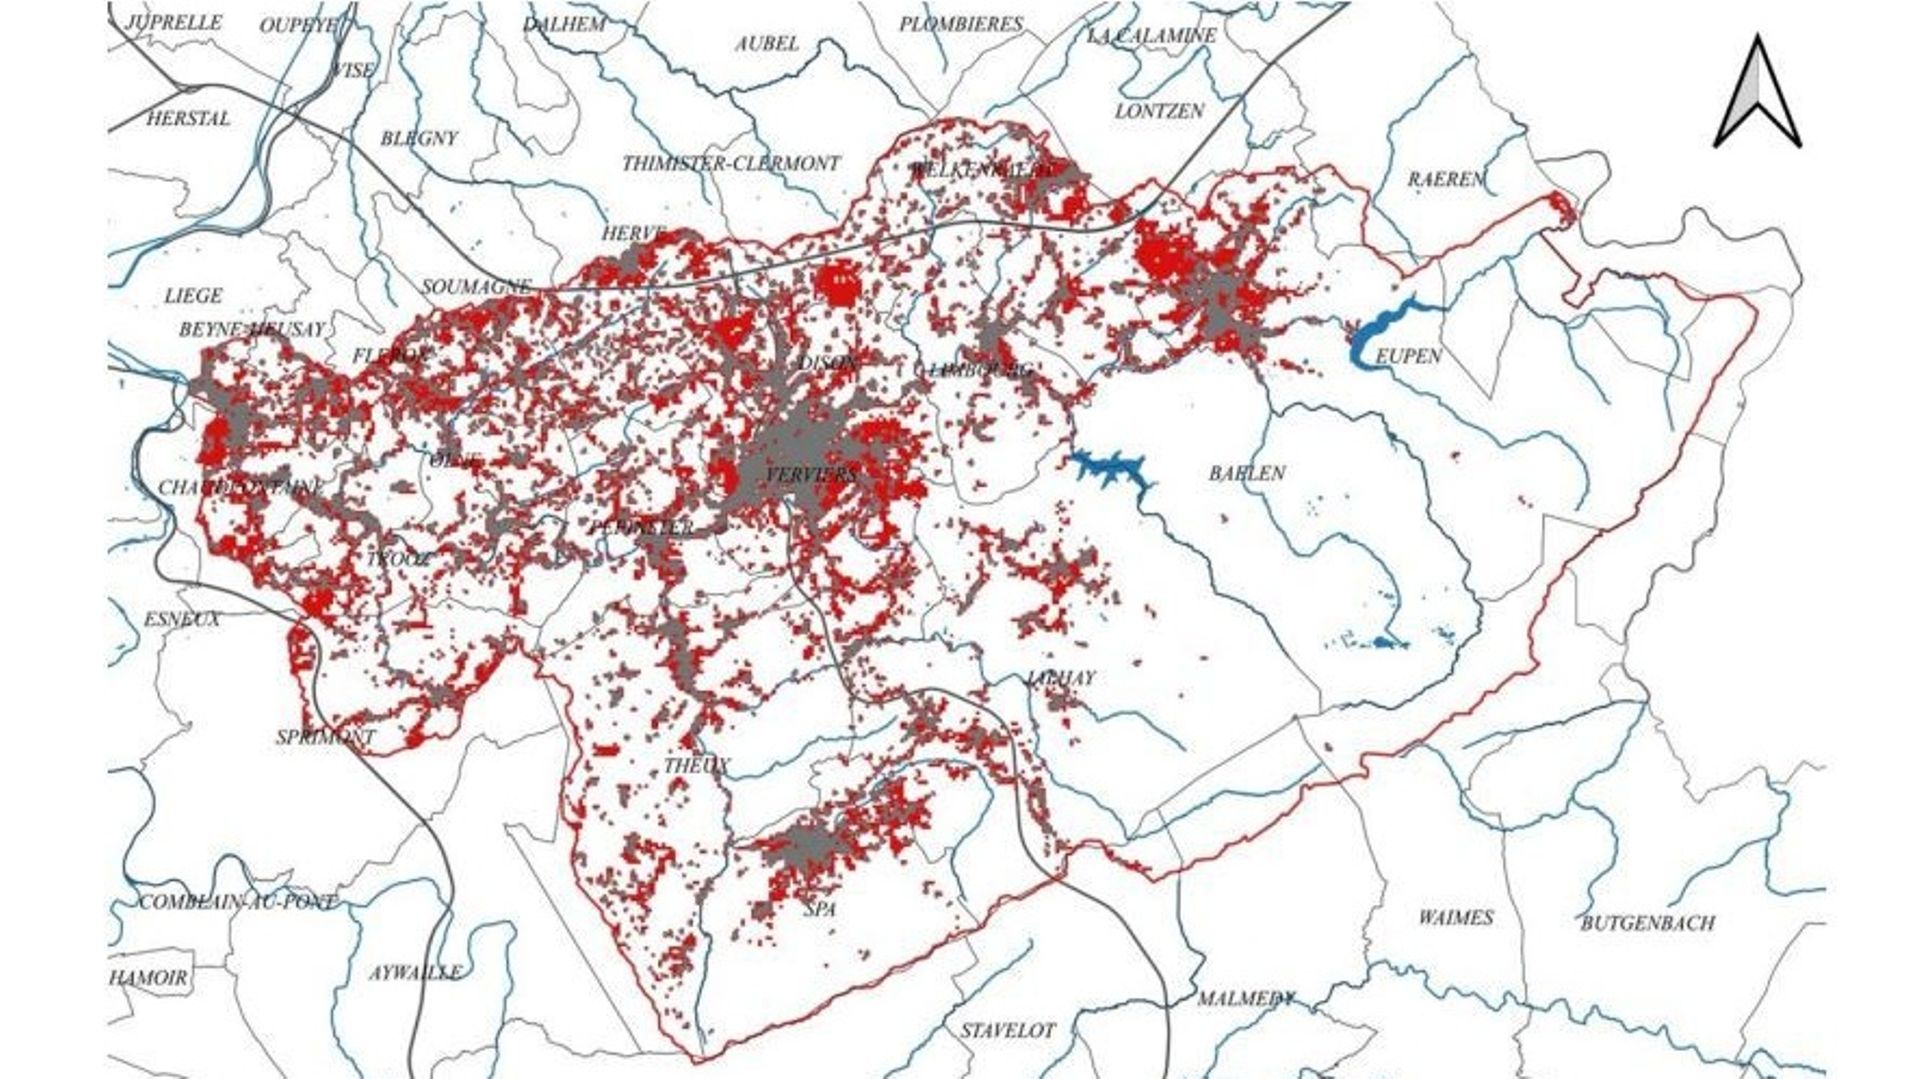 Taux d’urbanisation du bassin-versant. En rouge, les zones plus urbanisées, les périphéries, le plateau de Herve au Nord. En gris, les zones ayant perdu des habitants : les centres-villes et le fond de la vallée principalement.